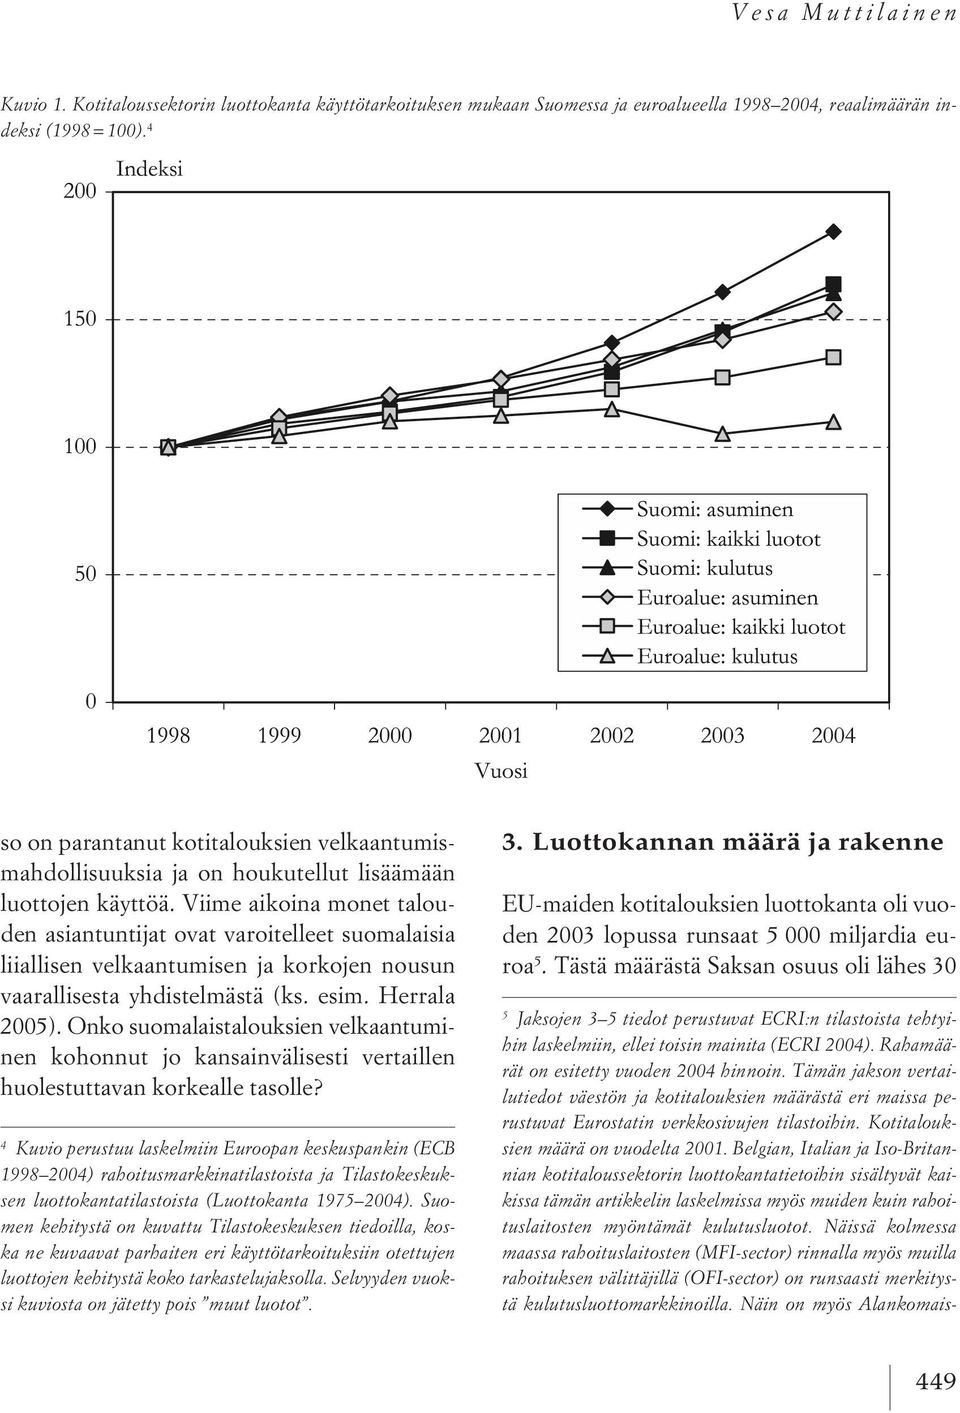 Viime aikoina monet talouden asiantuntijat ovat varoitelleet suomalaisia liiallisen velkaantumisen ja korkojen nousun vaarallisesta yhdistelmästä (ks. esim. Herrala 2005).